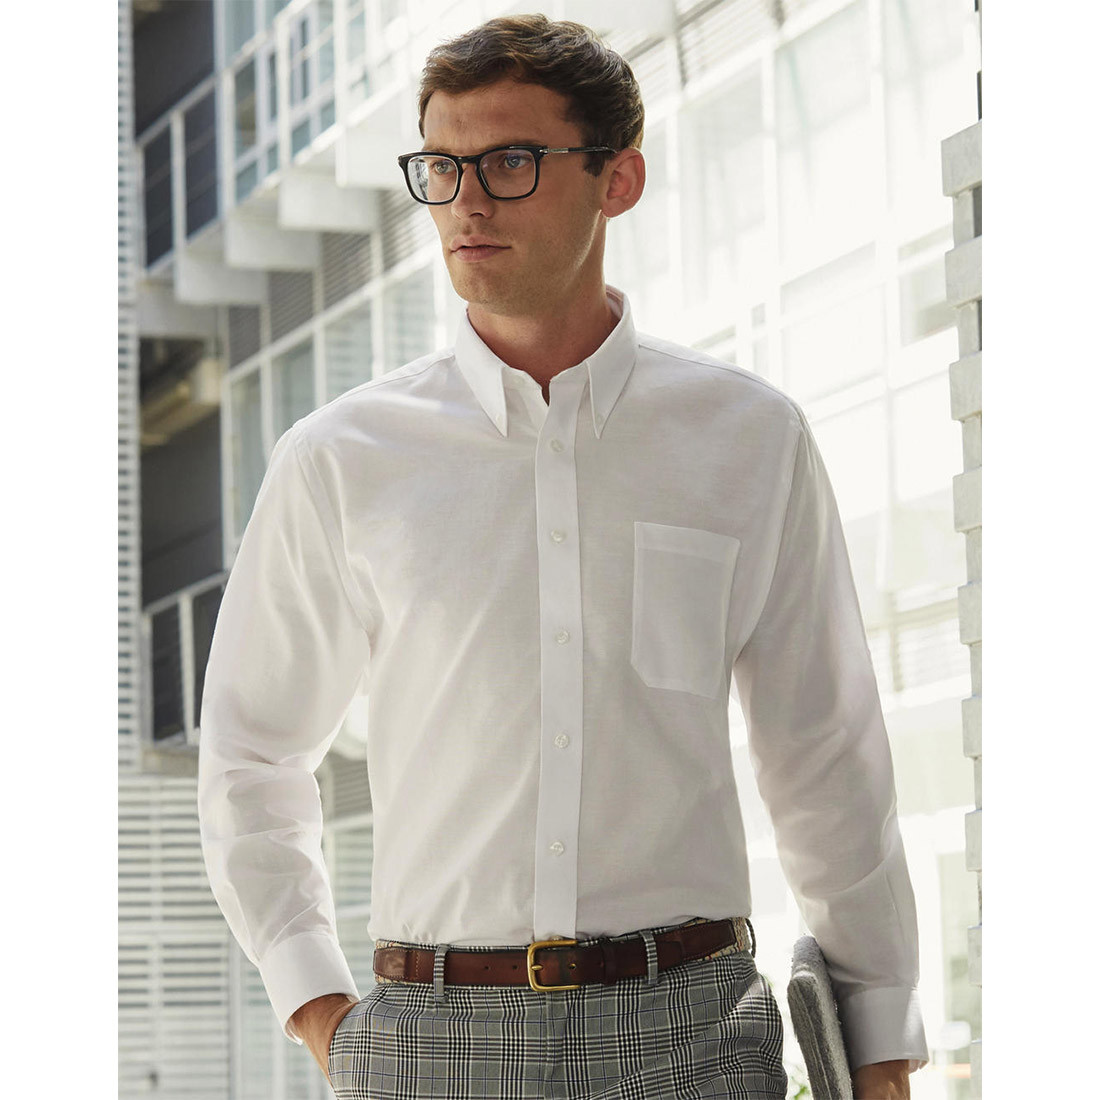 Camicia Uomo Oxford Manica Lunga - Abbigliamento di protezione